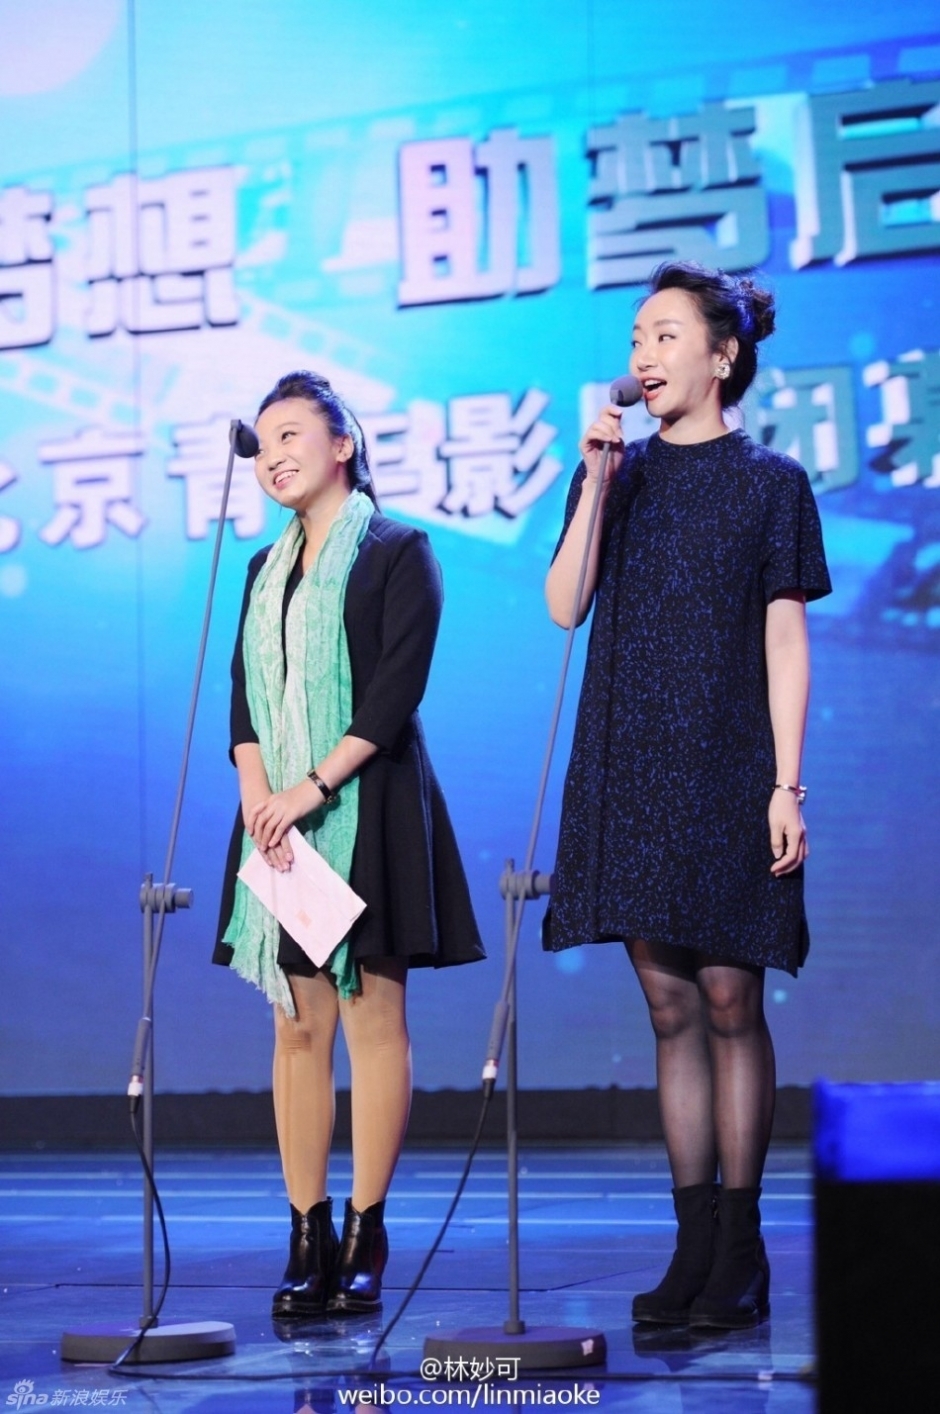 林妙可助阵北京青年影展 黑裙造型略成熟